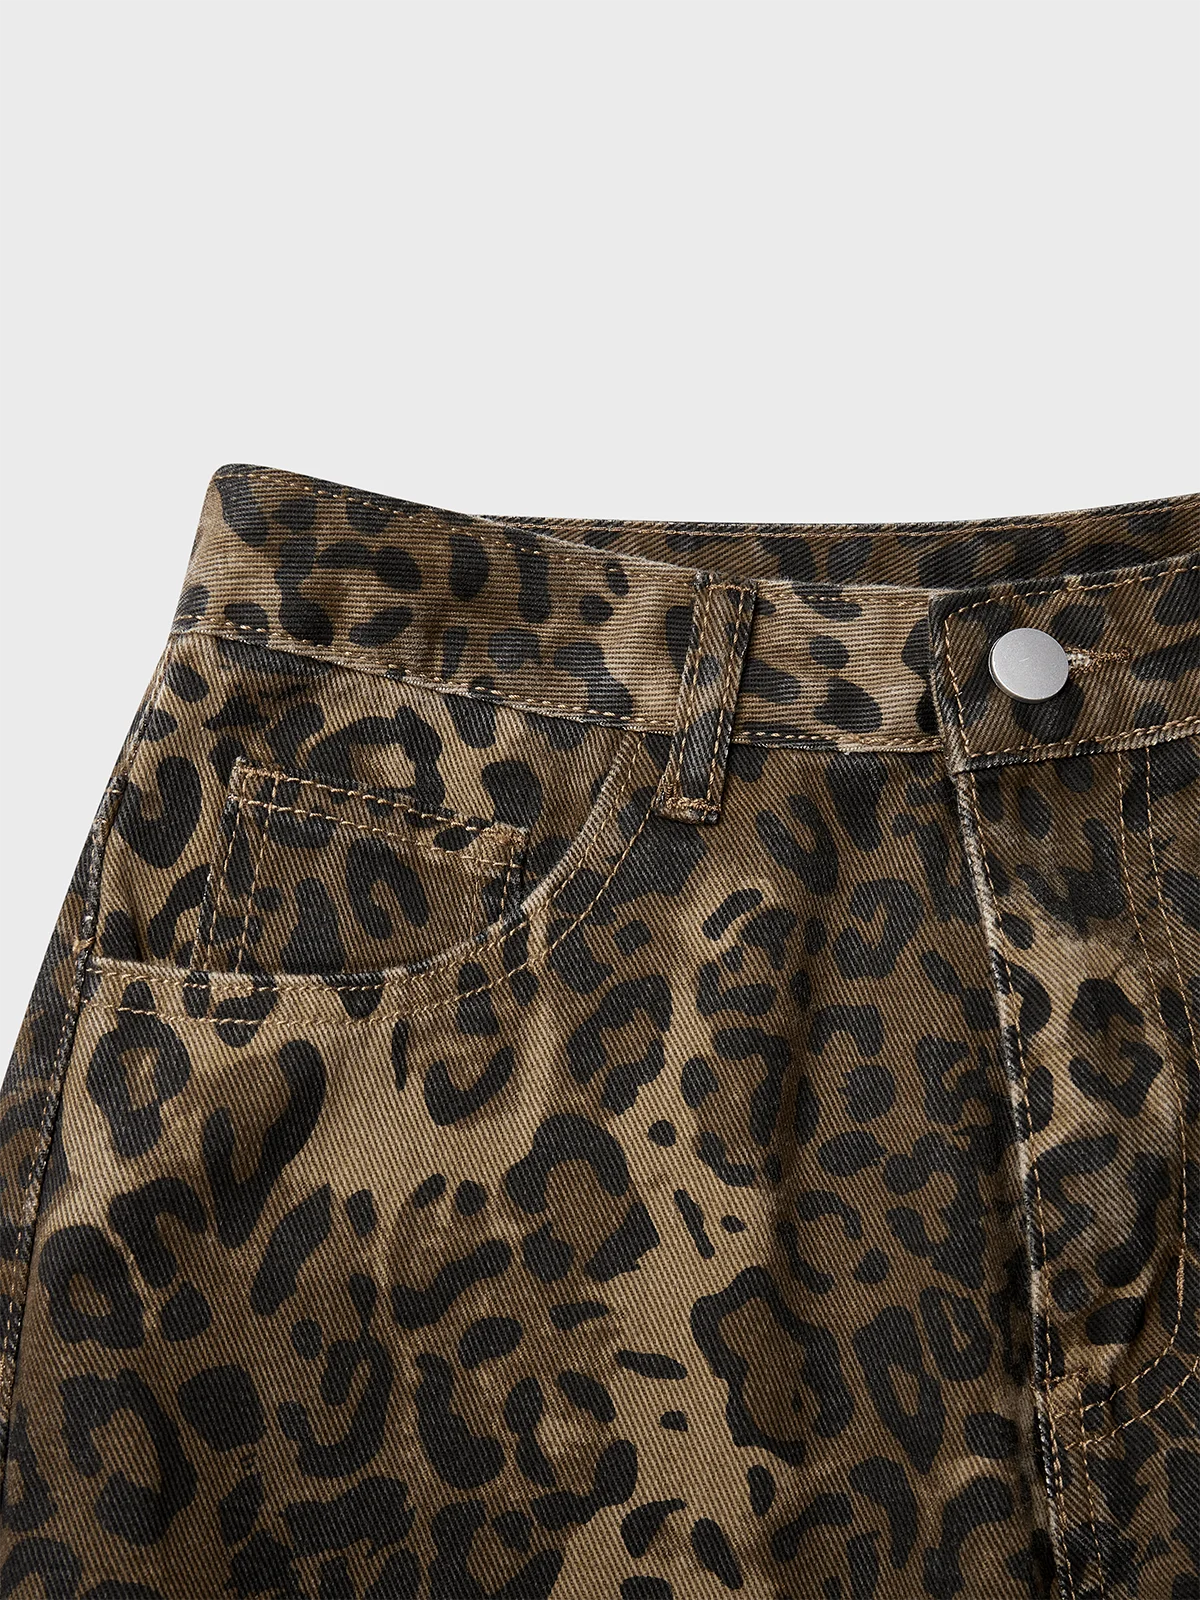 Cotton Leopard Straight Pants Jeans